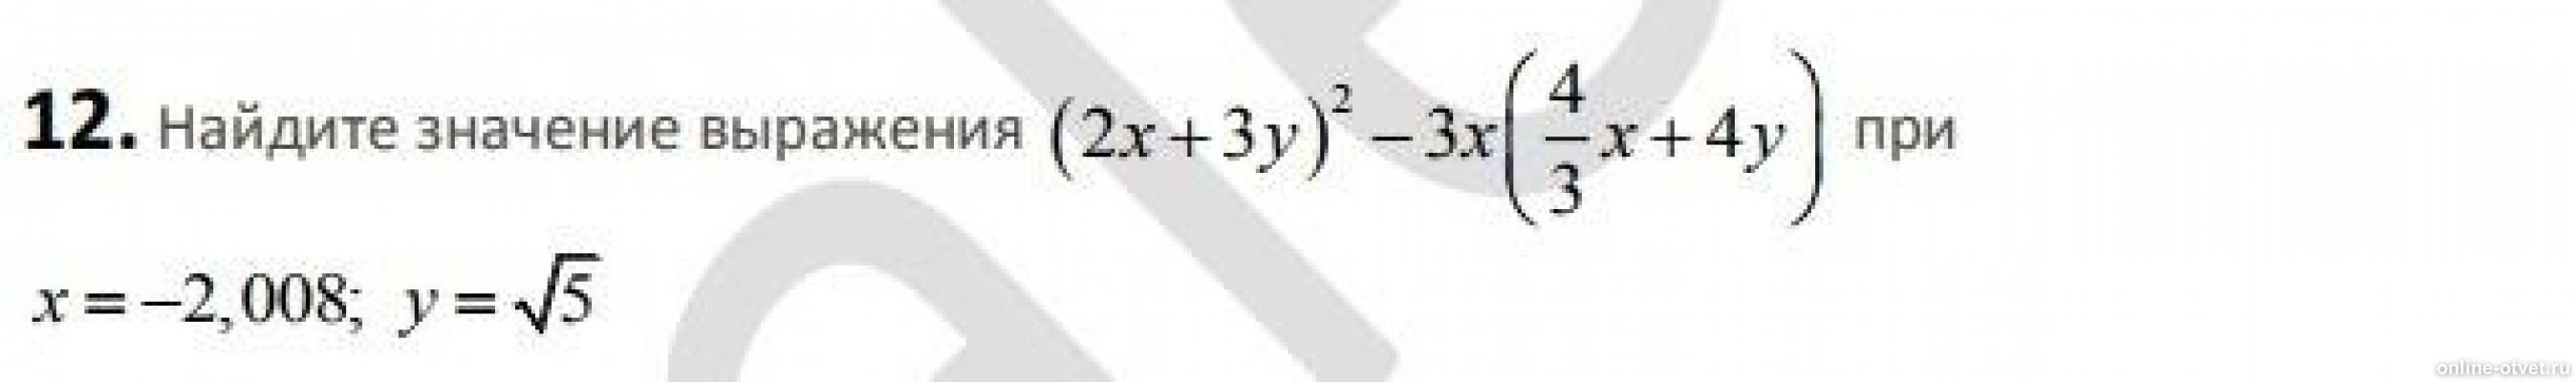 Корень x корень y 16. Корень 1/16 x6 y4 при x 2 y 5. Найдите значения выражения x/x+y при x 2 y 8. X+ корень из x 2+8x +16 при x - 4. Корень из 4x6y4 при x3 y5.